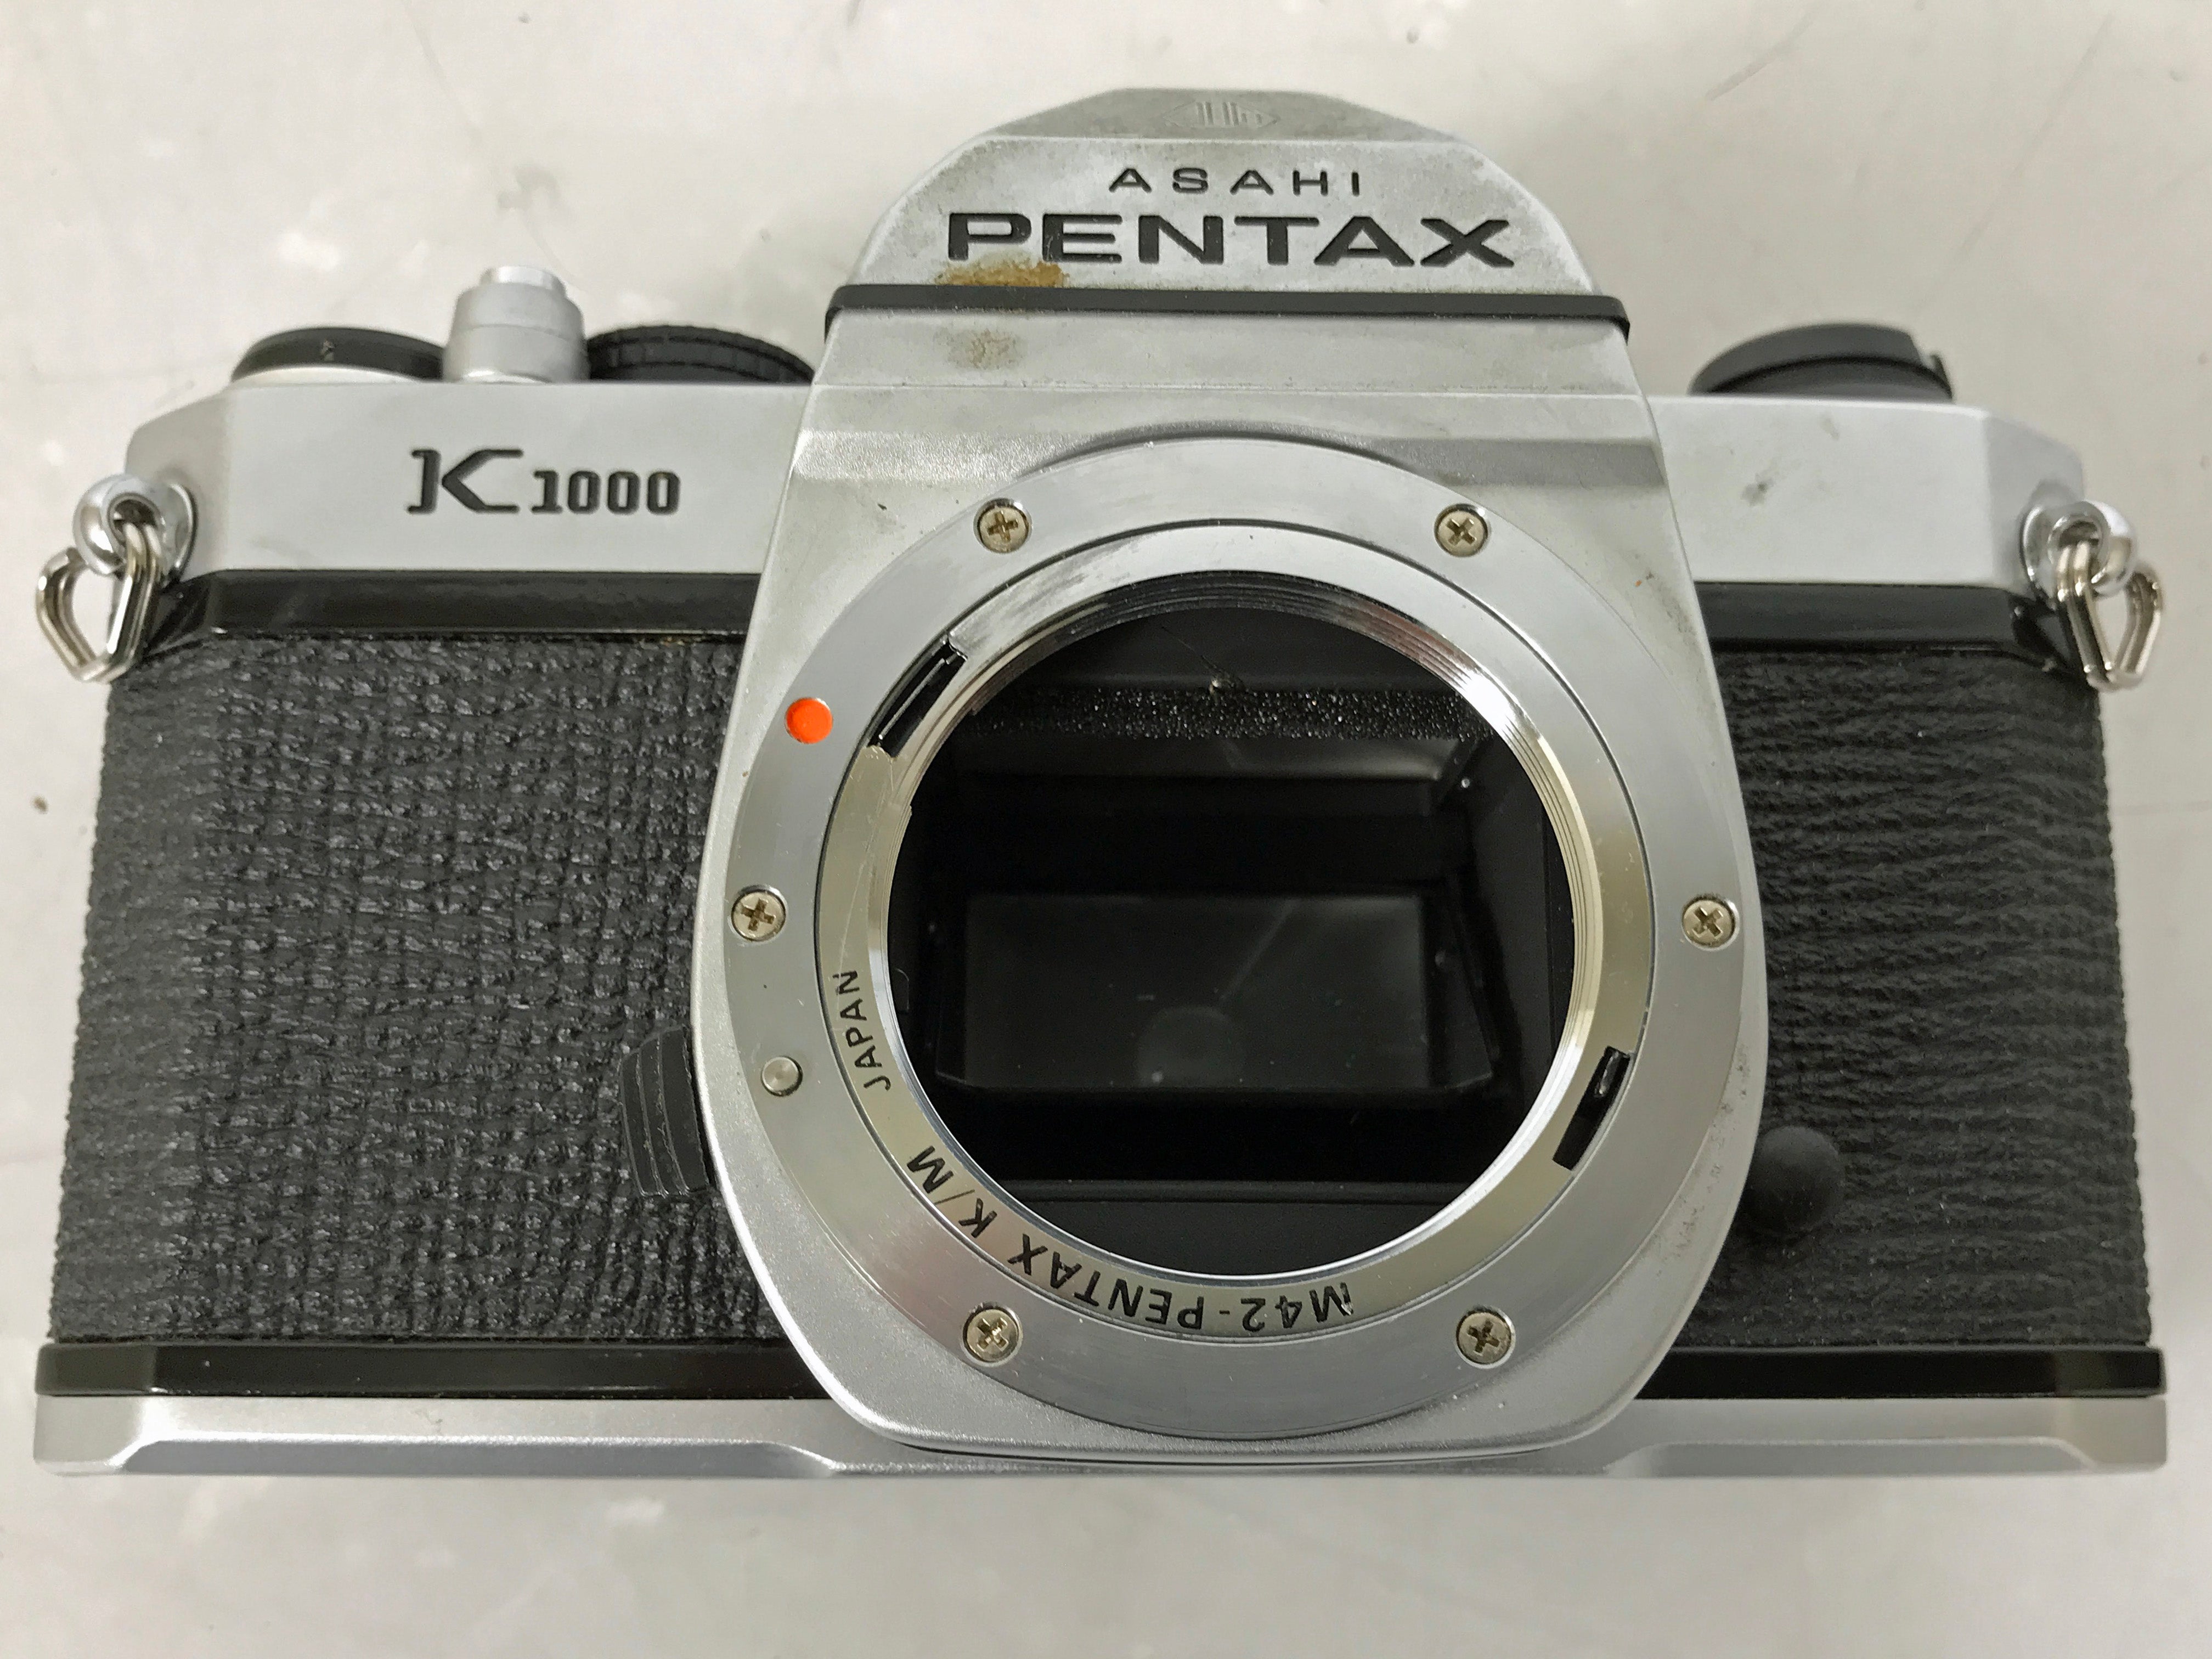 Asahi Pentax K1000 Film Camera – MSU Surplus Store